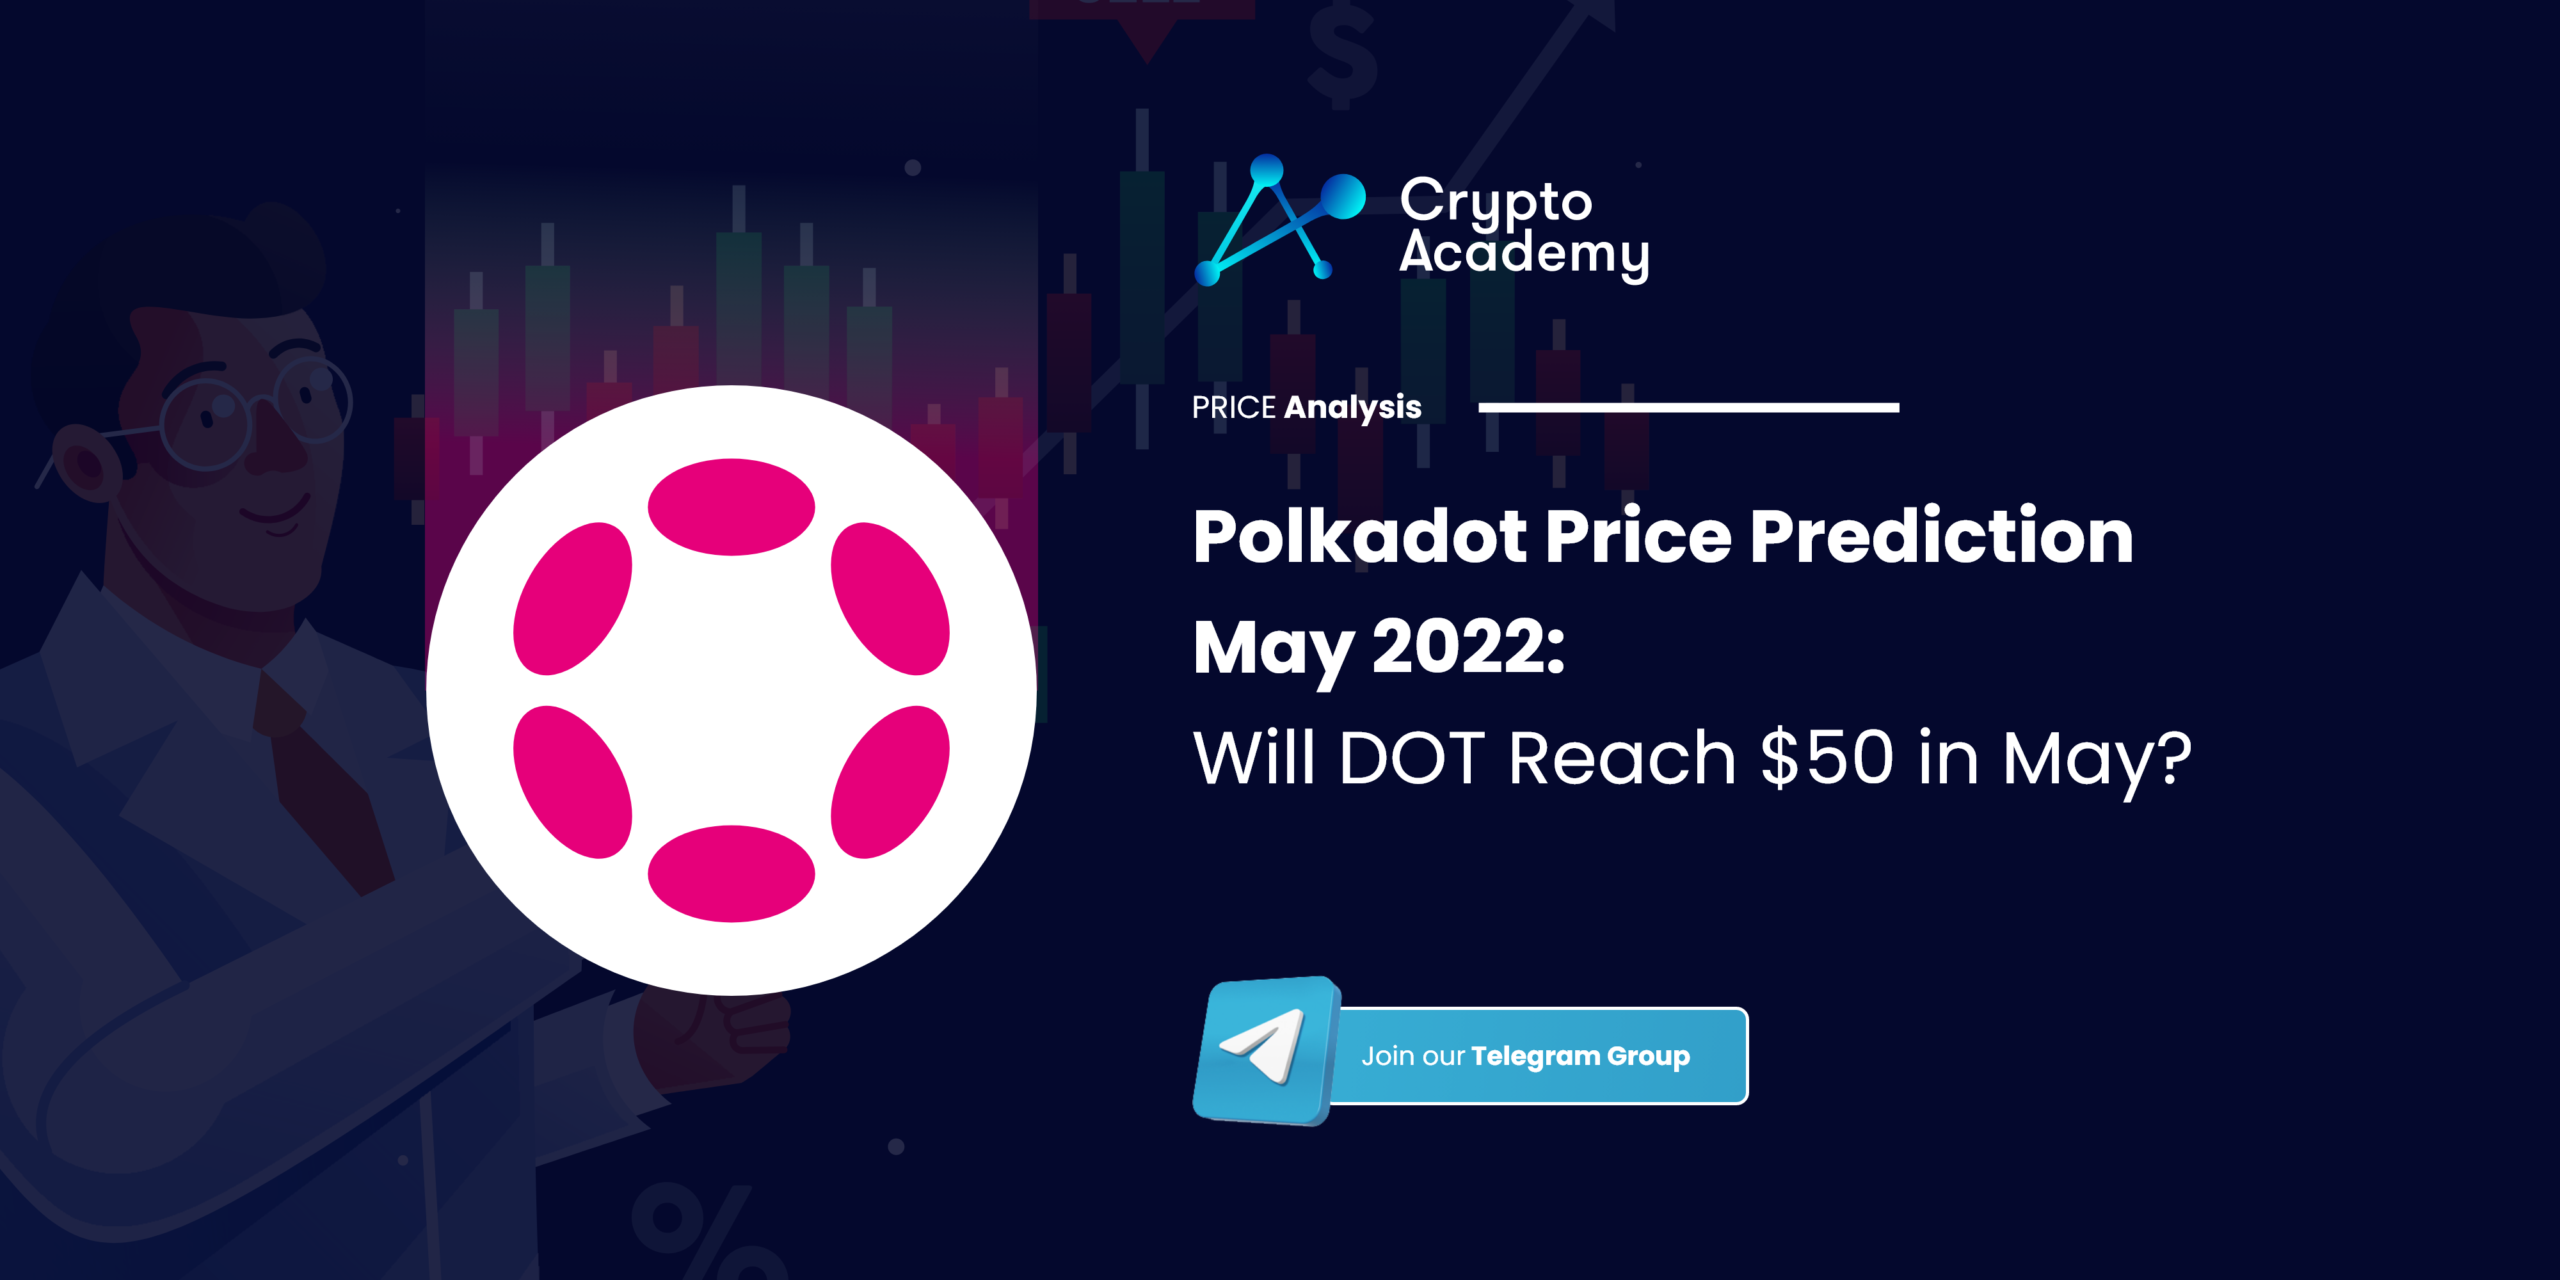 Polkadot Price Prediction May 2022: Will DOT Reach $50 in May?